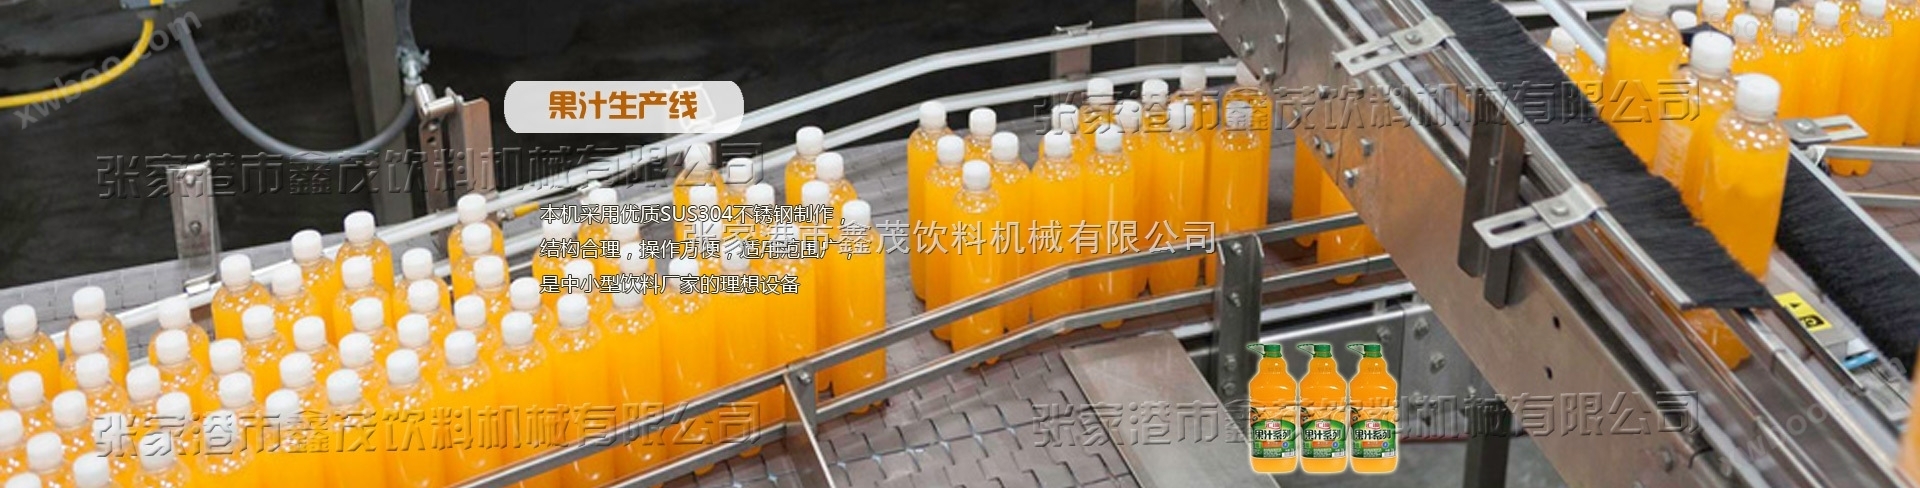 RCGF系列苹果汁生产三合一苹果汁灌装三合一